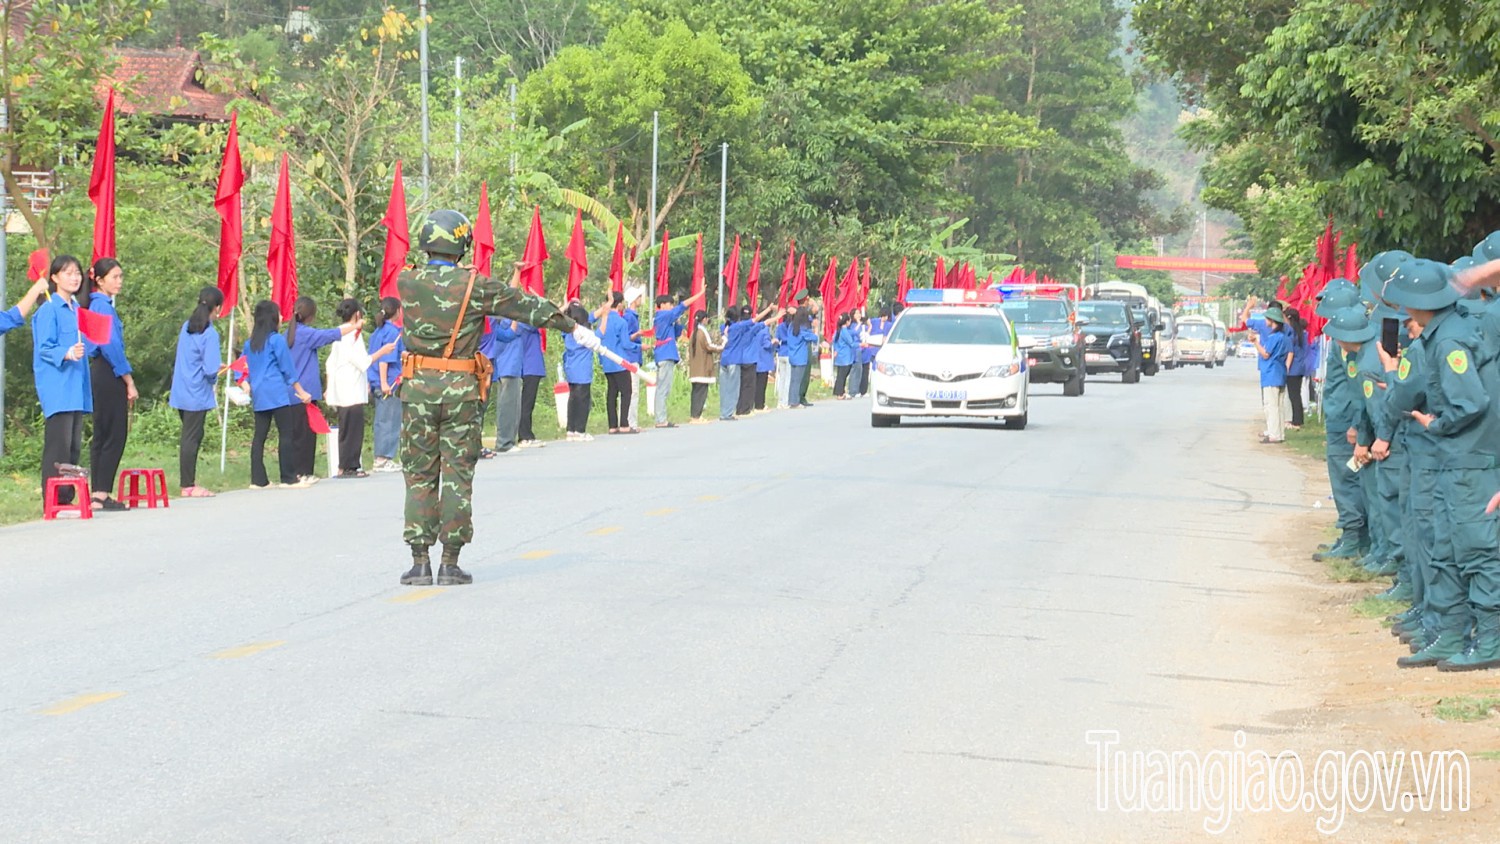 Tuần Giáo: Tiễn đoàn diễu binh kỷ niệm 70 năm chiến thắng Điện Biên Phủ